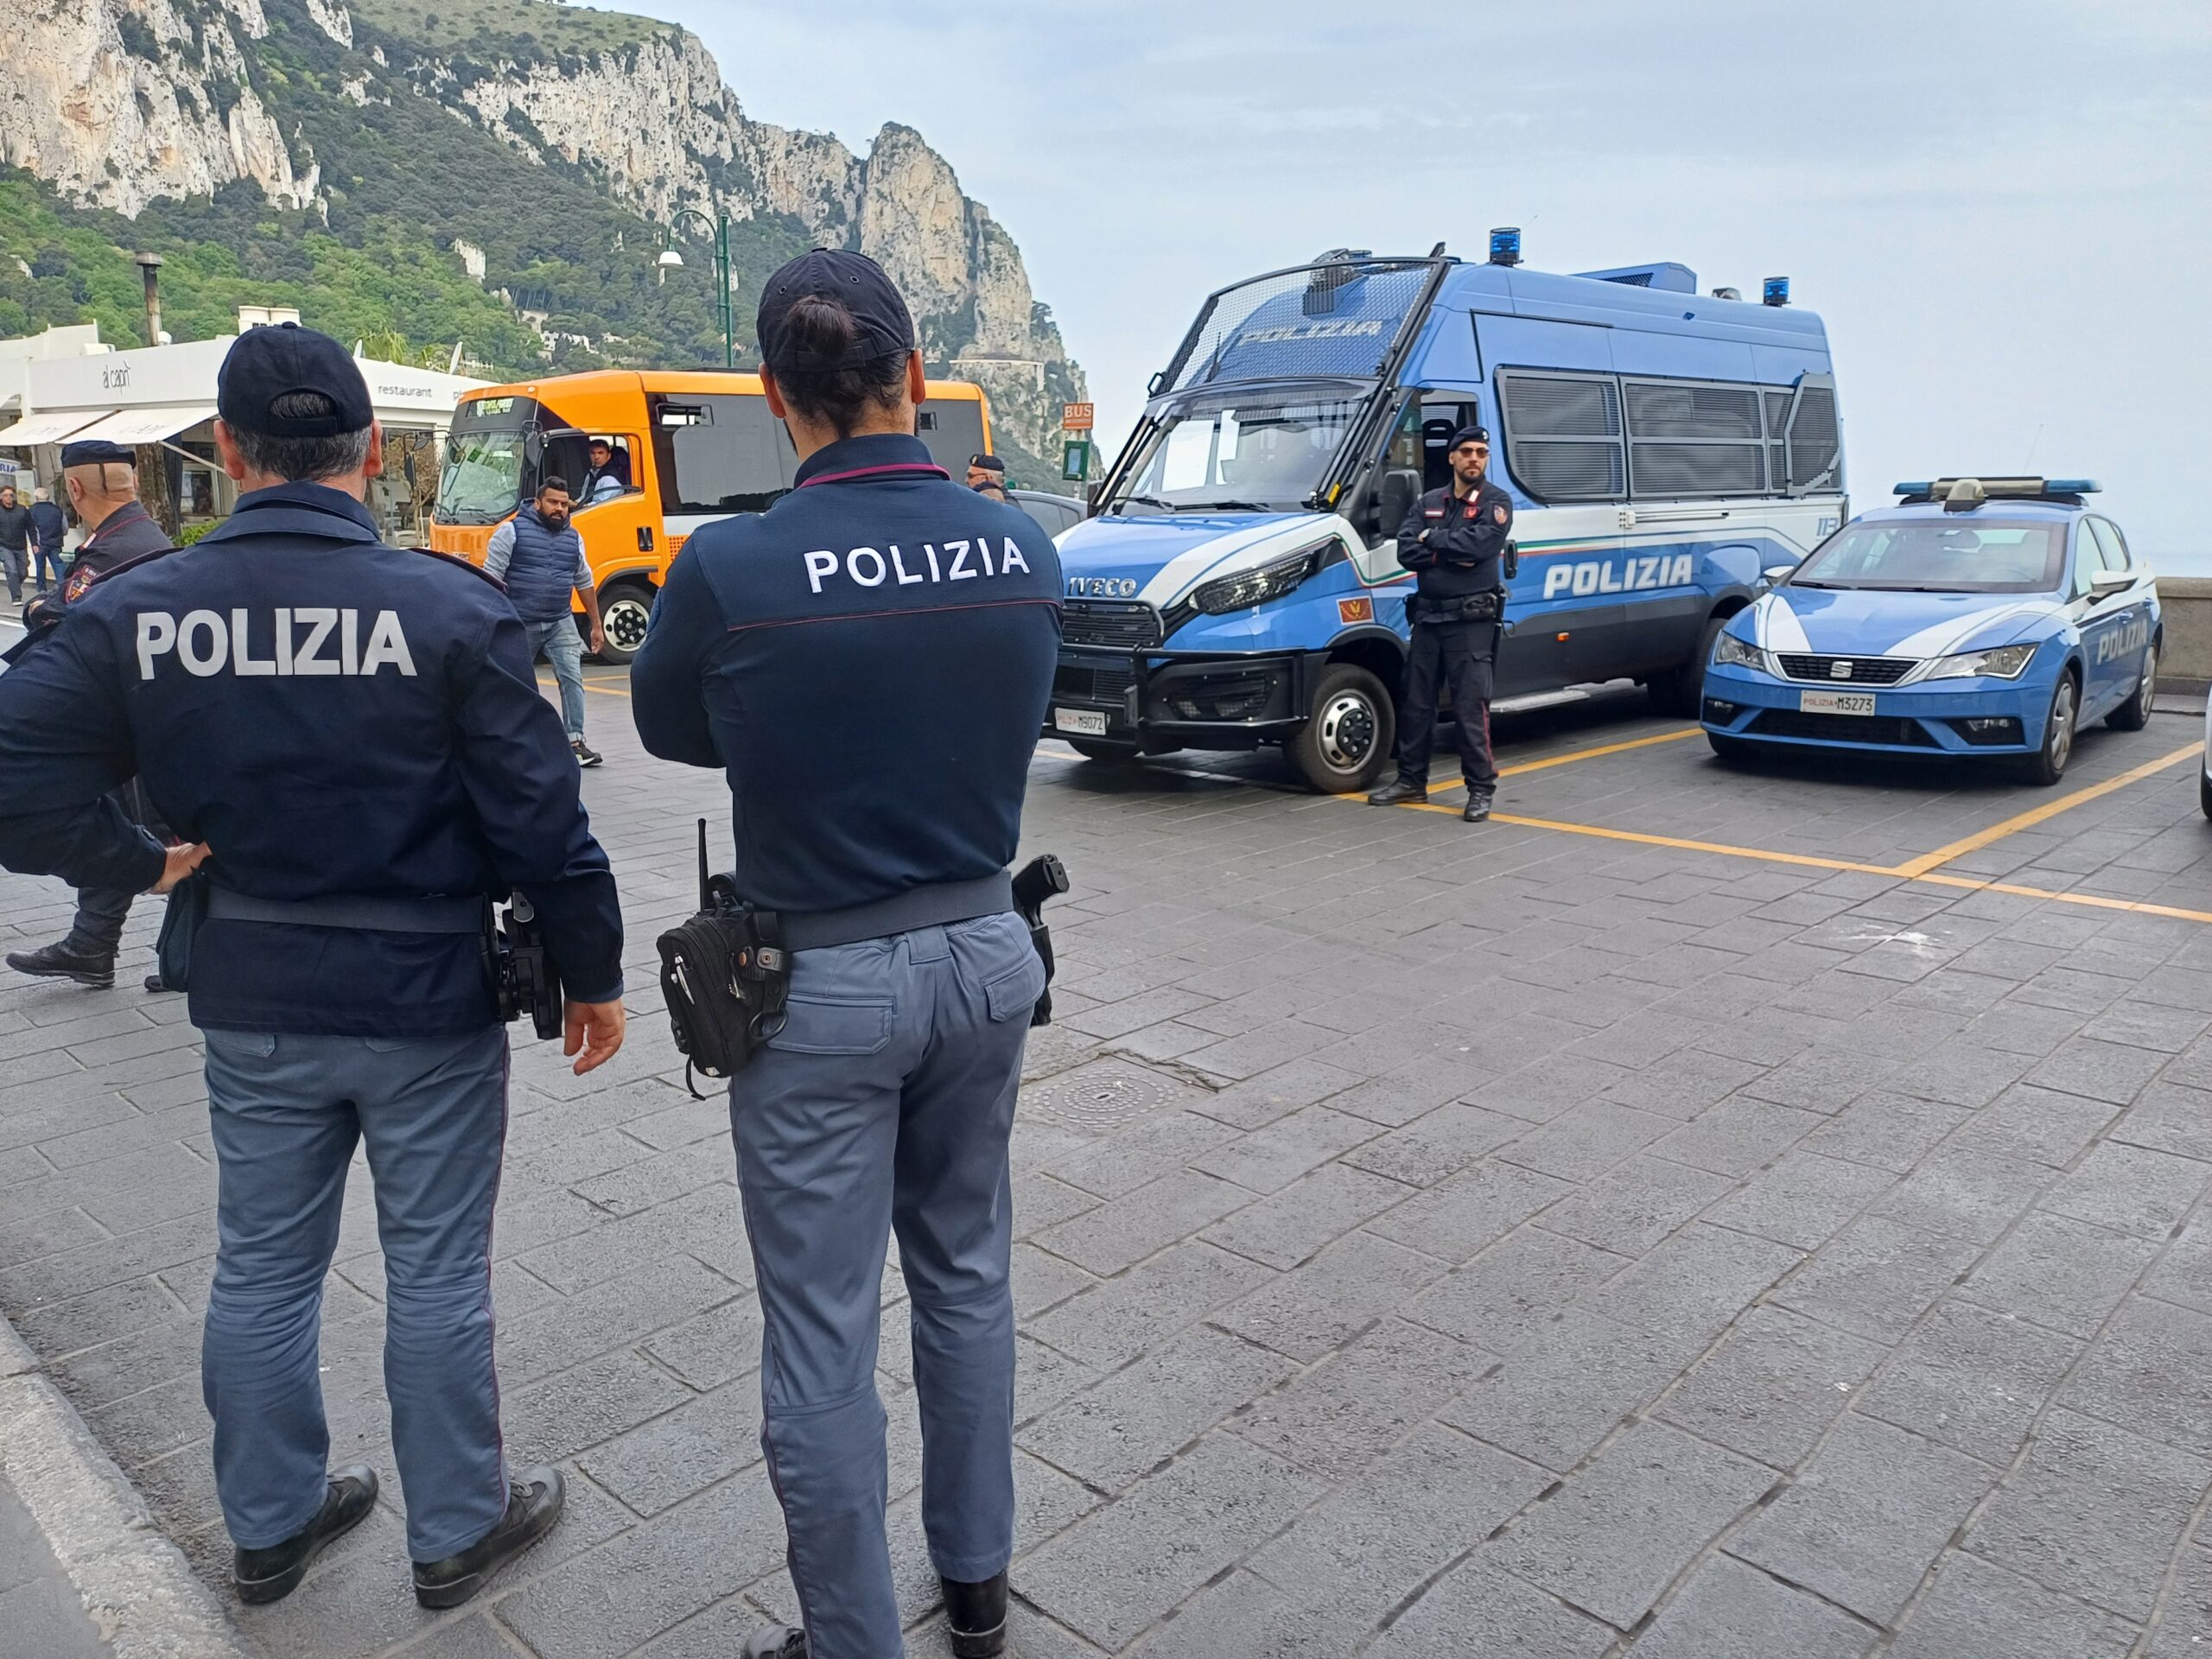 Ritrovato ad Anacapri il passaporto rubato a Capri alla turista brasiliana, indagini della Polizia per risalire agli autori del furto